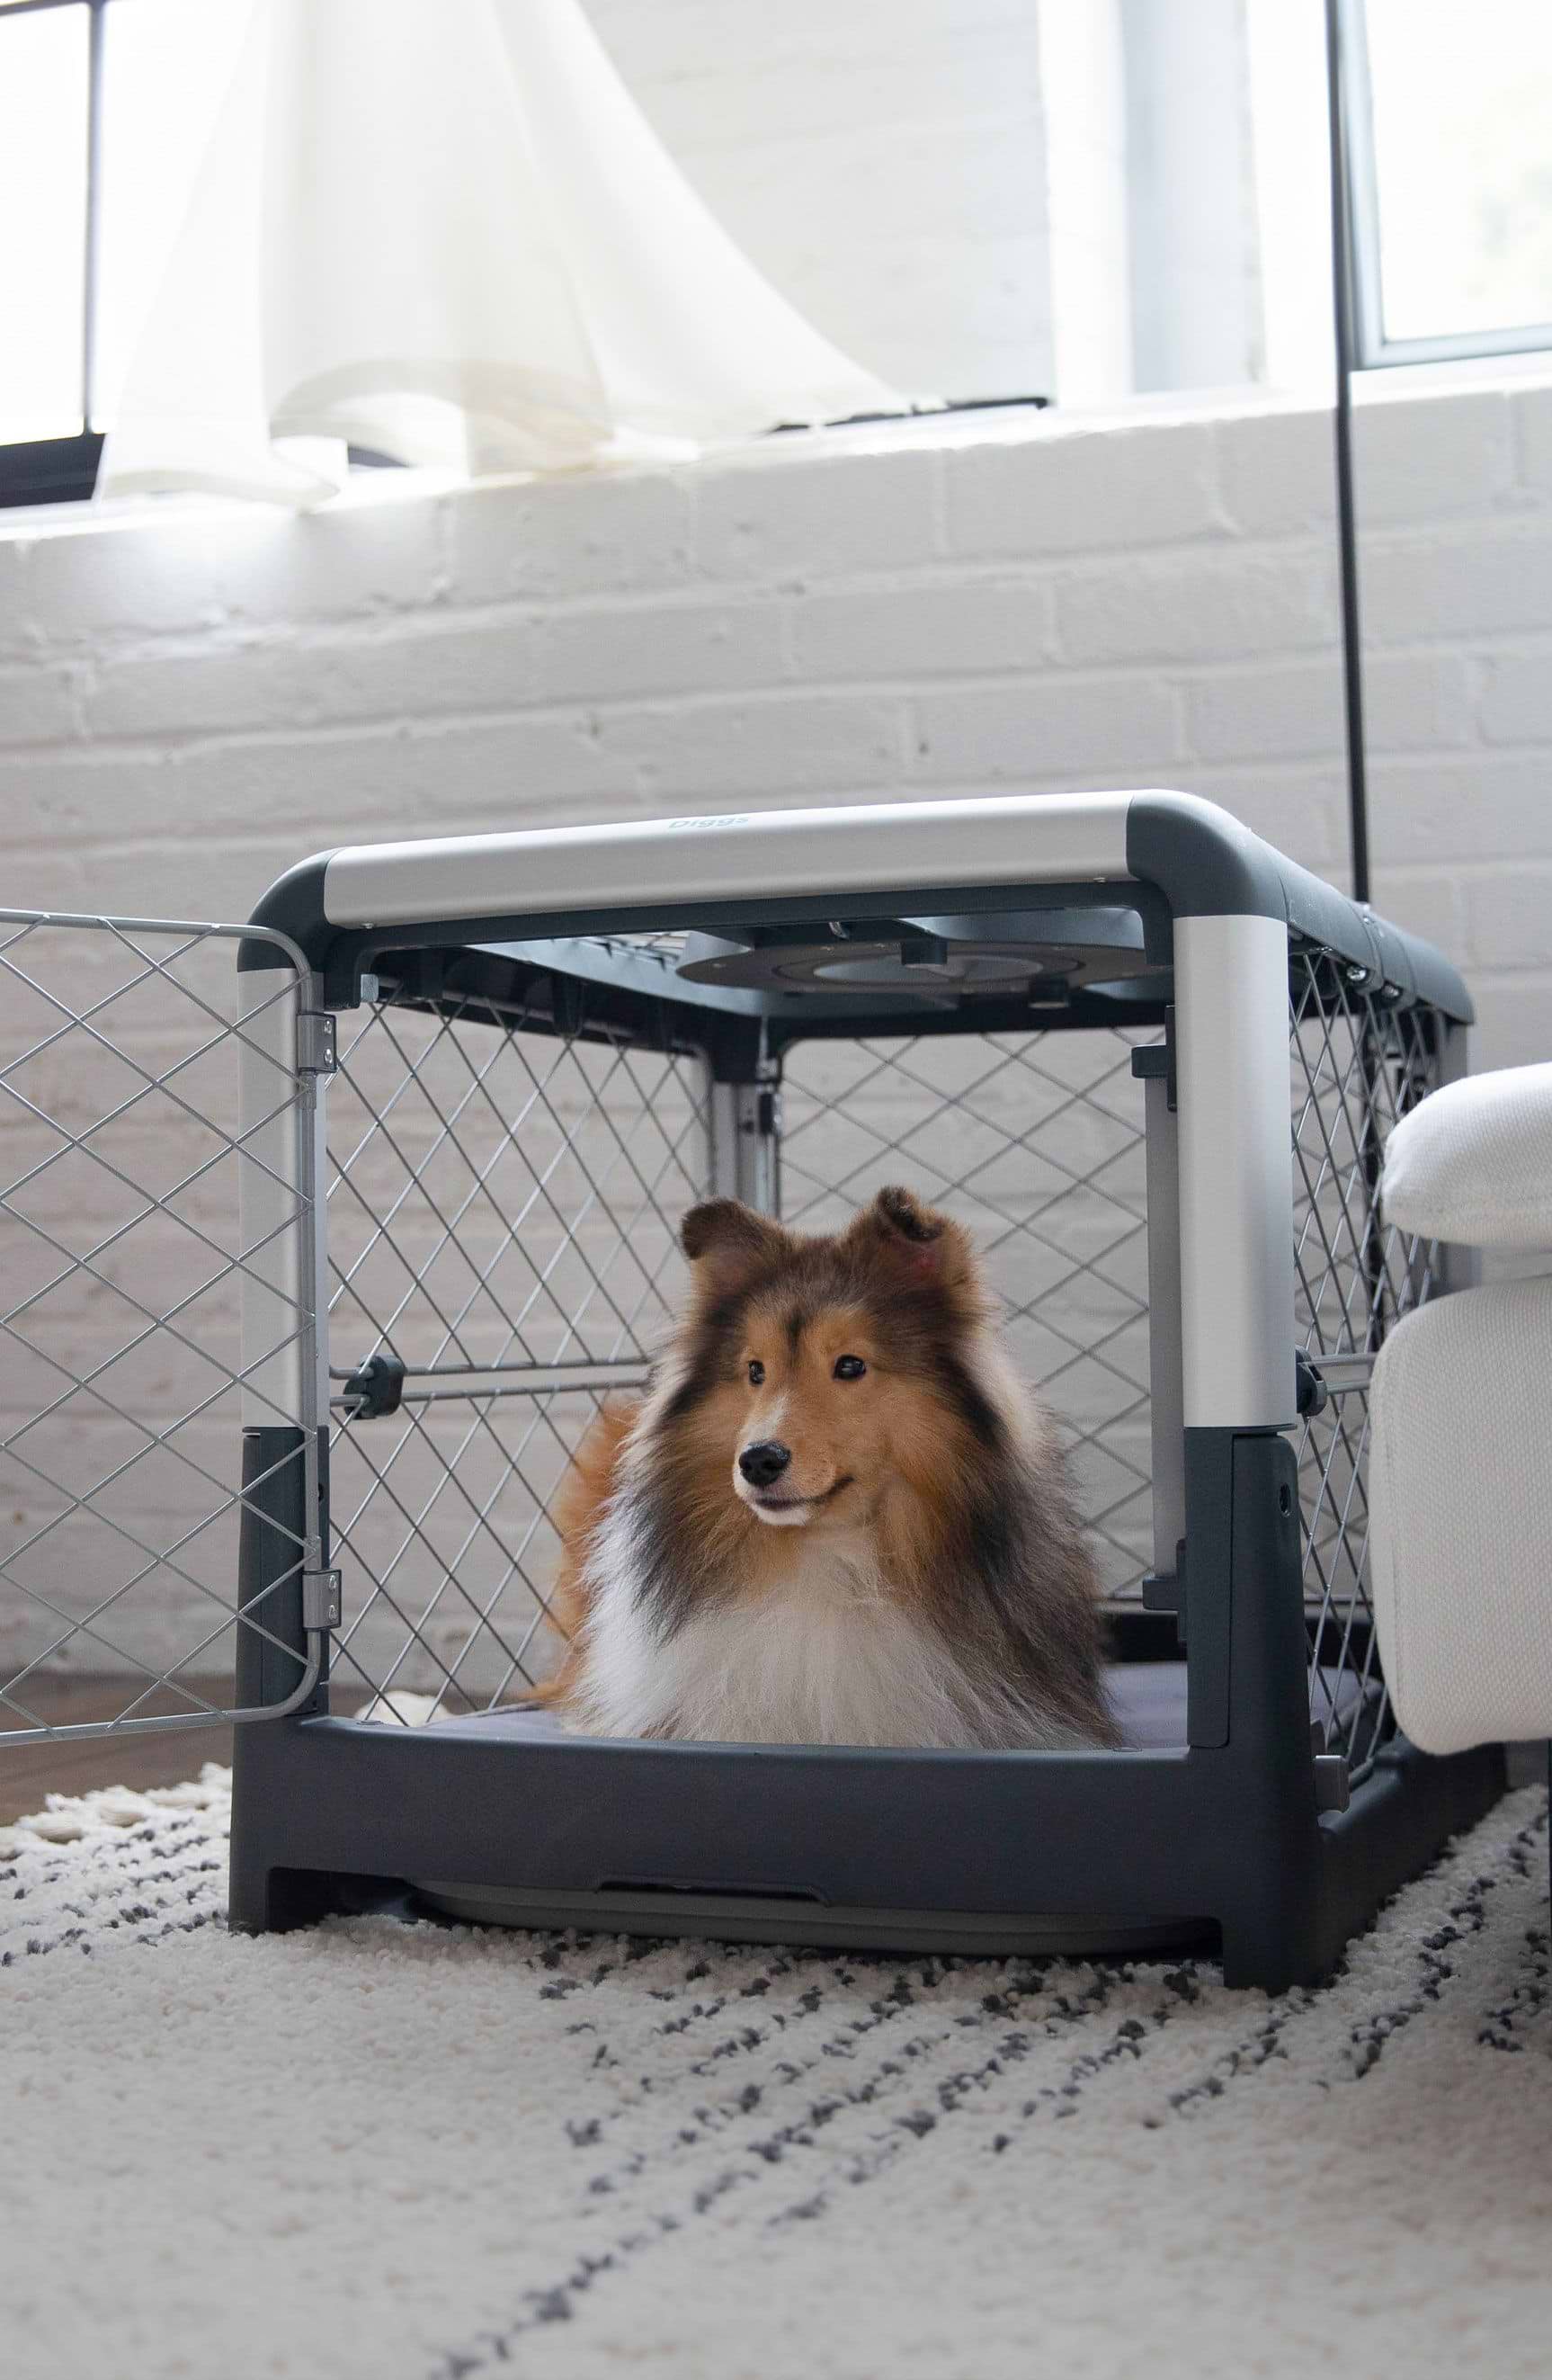 Revolutionary Dog Crates and Pet Beds - DIGGS® - Diggs